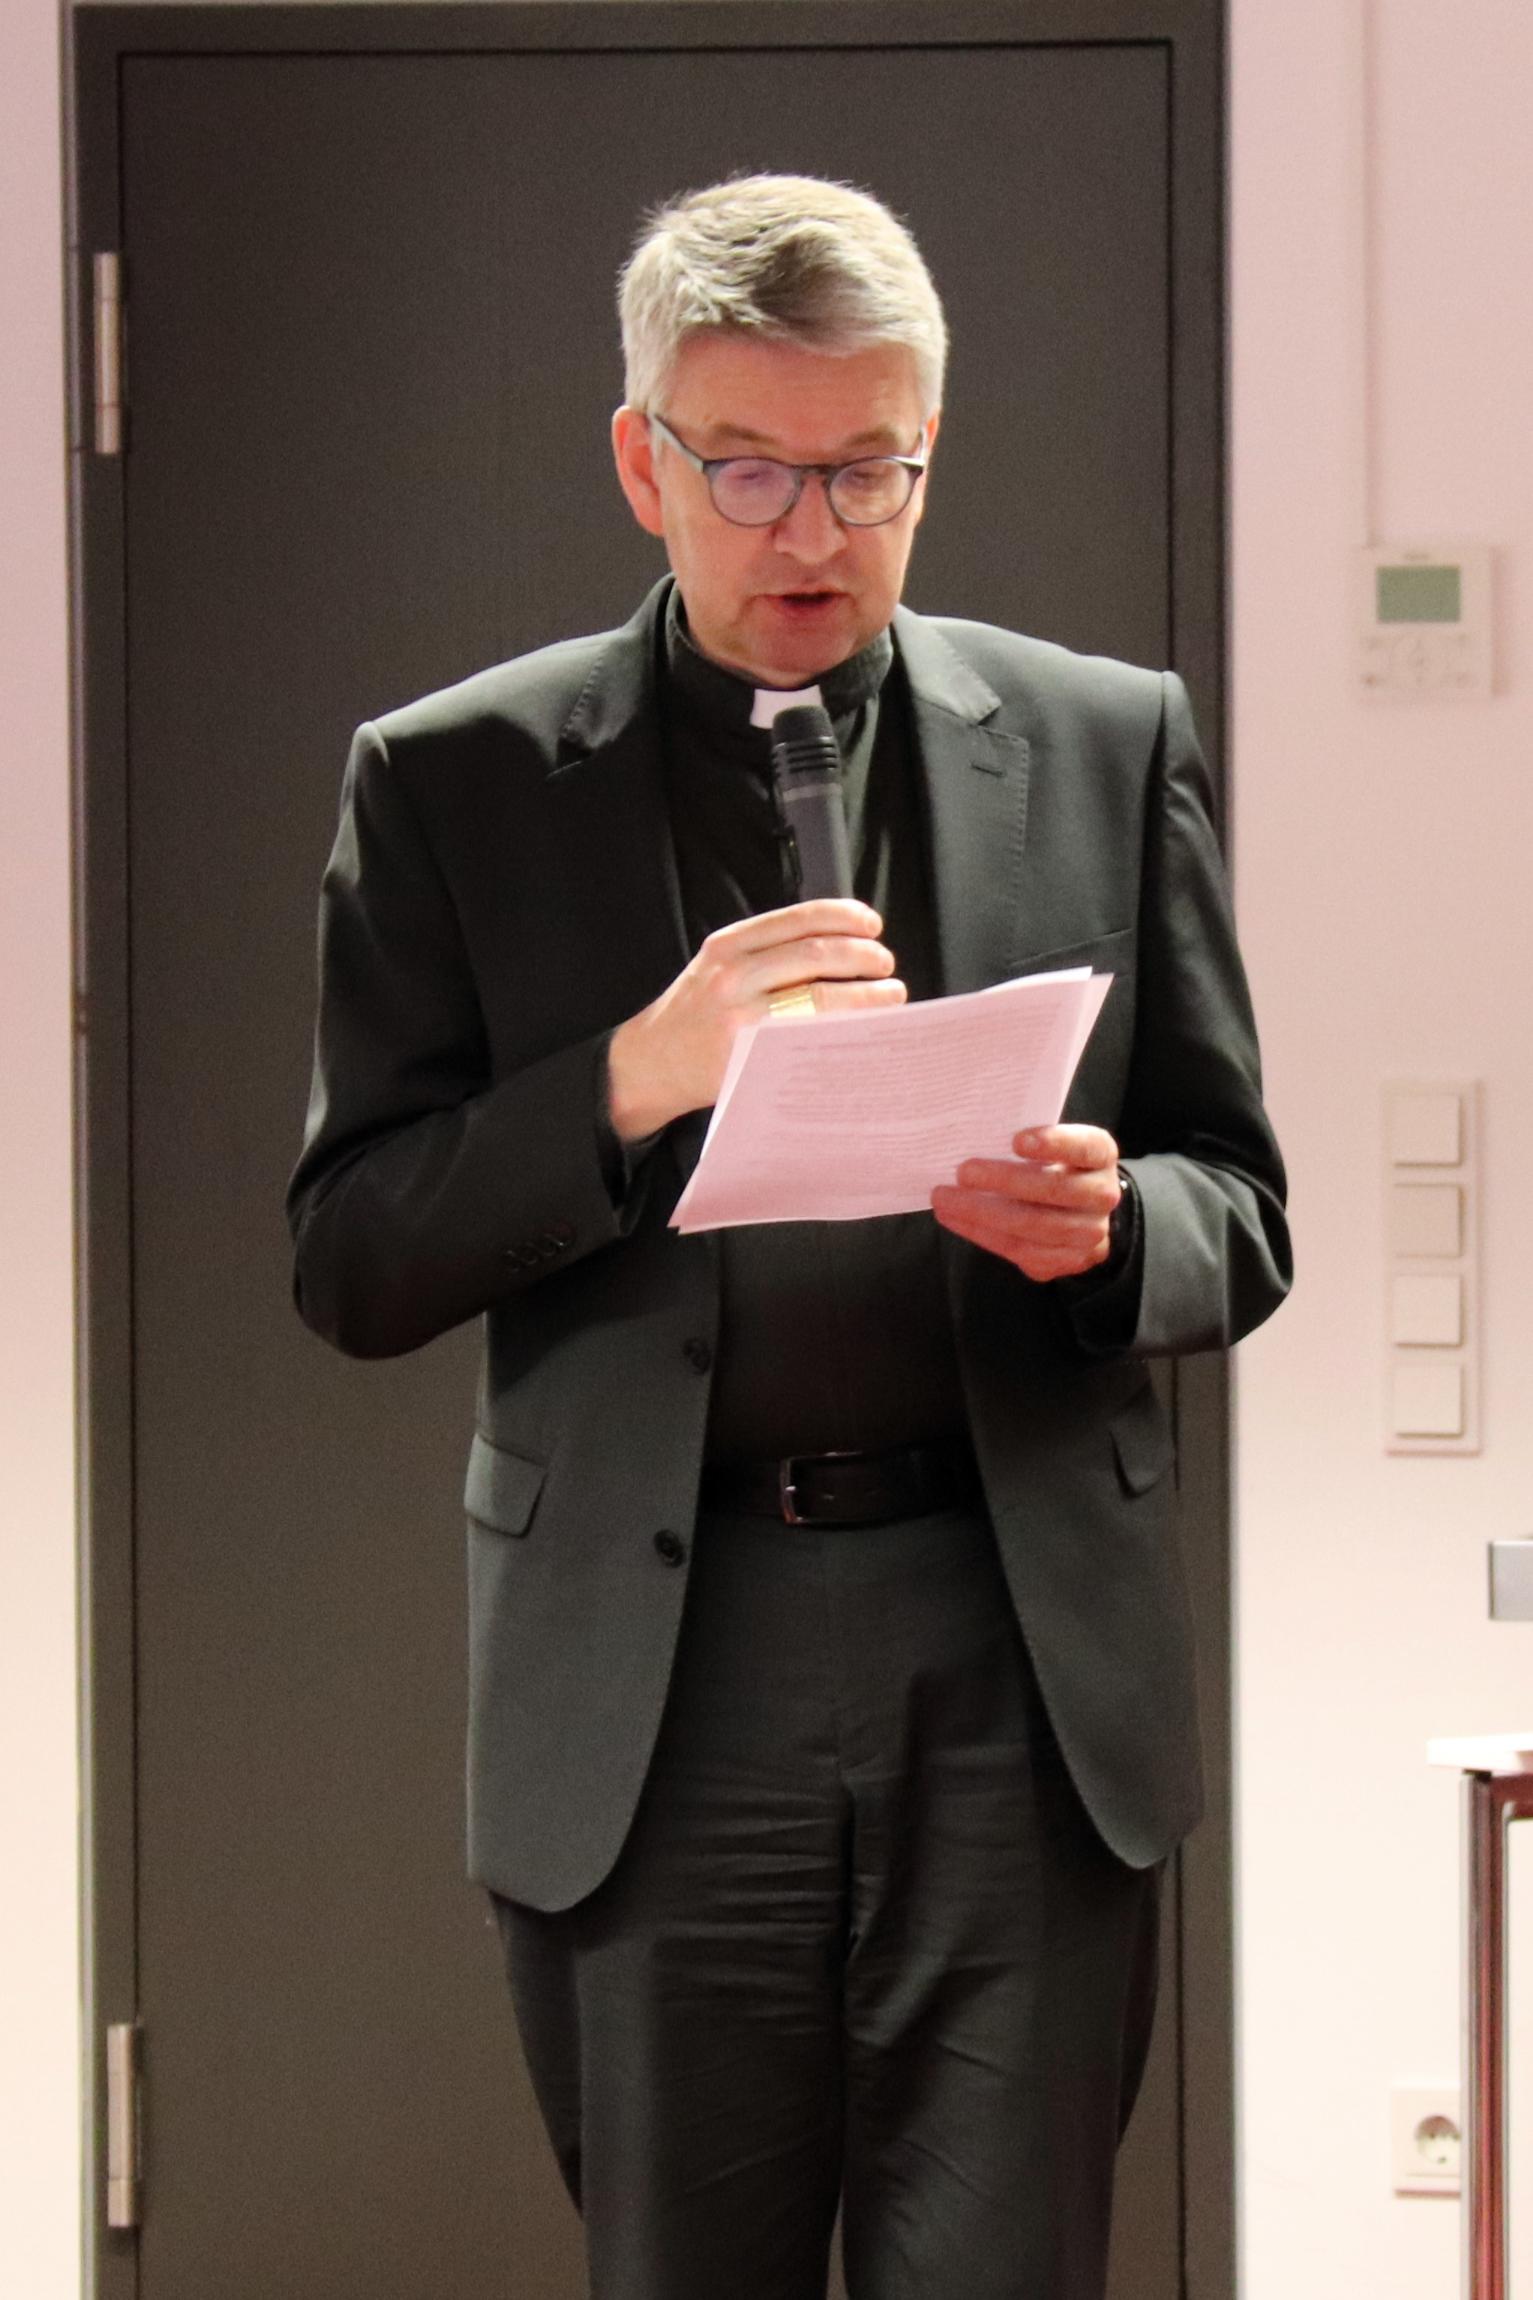 Bischof Peter Kohlgraf bei seiner Begrüßung am Diskussionsabend zum Thema Klimakommunikation (c) Bistum Mainz/Hoffmann